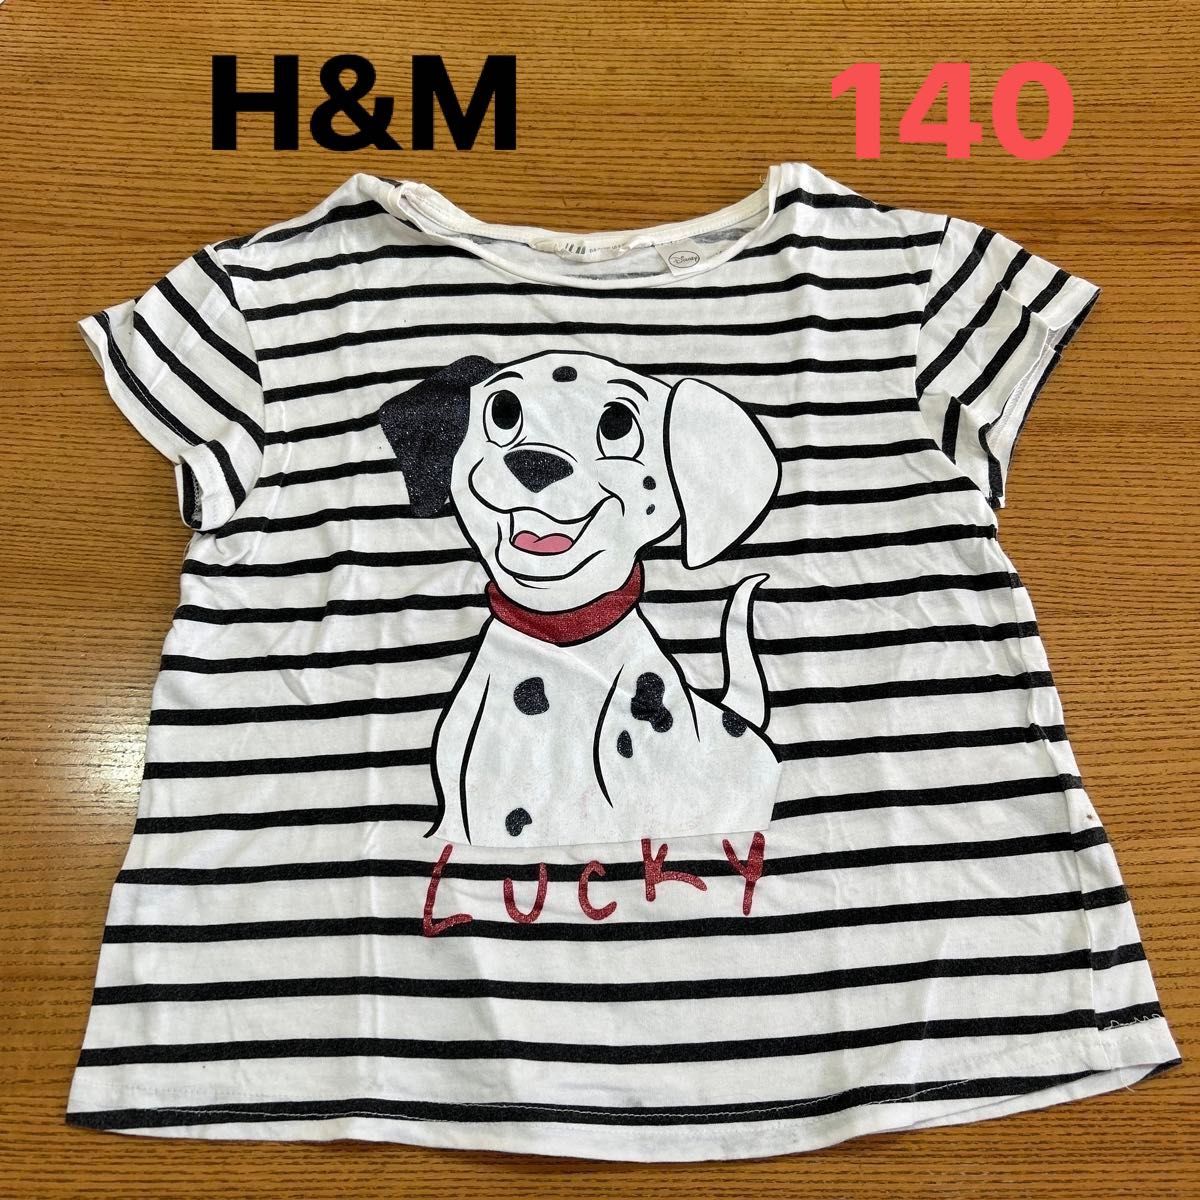 【H&M】(USED)ディズニー 101匹わんちゃん 白&黒 ボーダー 半袖Tシャツ 134/140